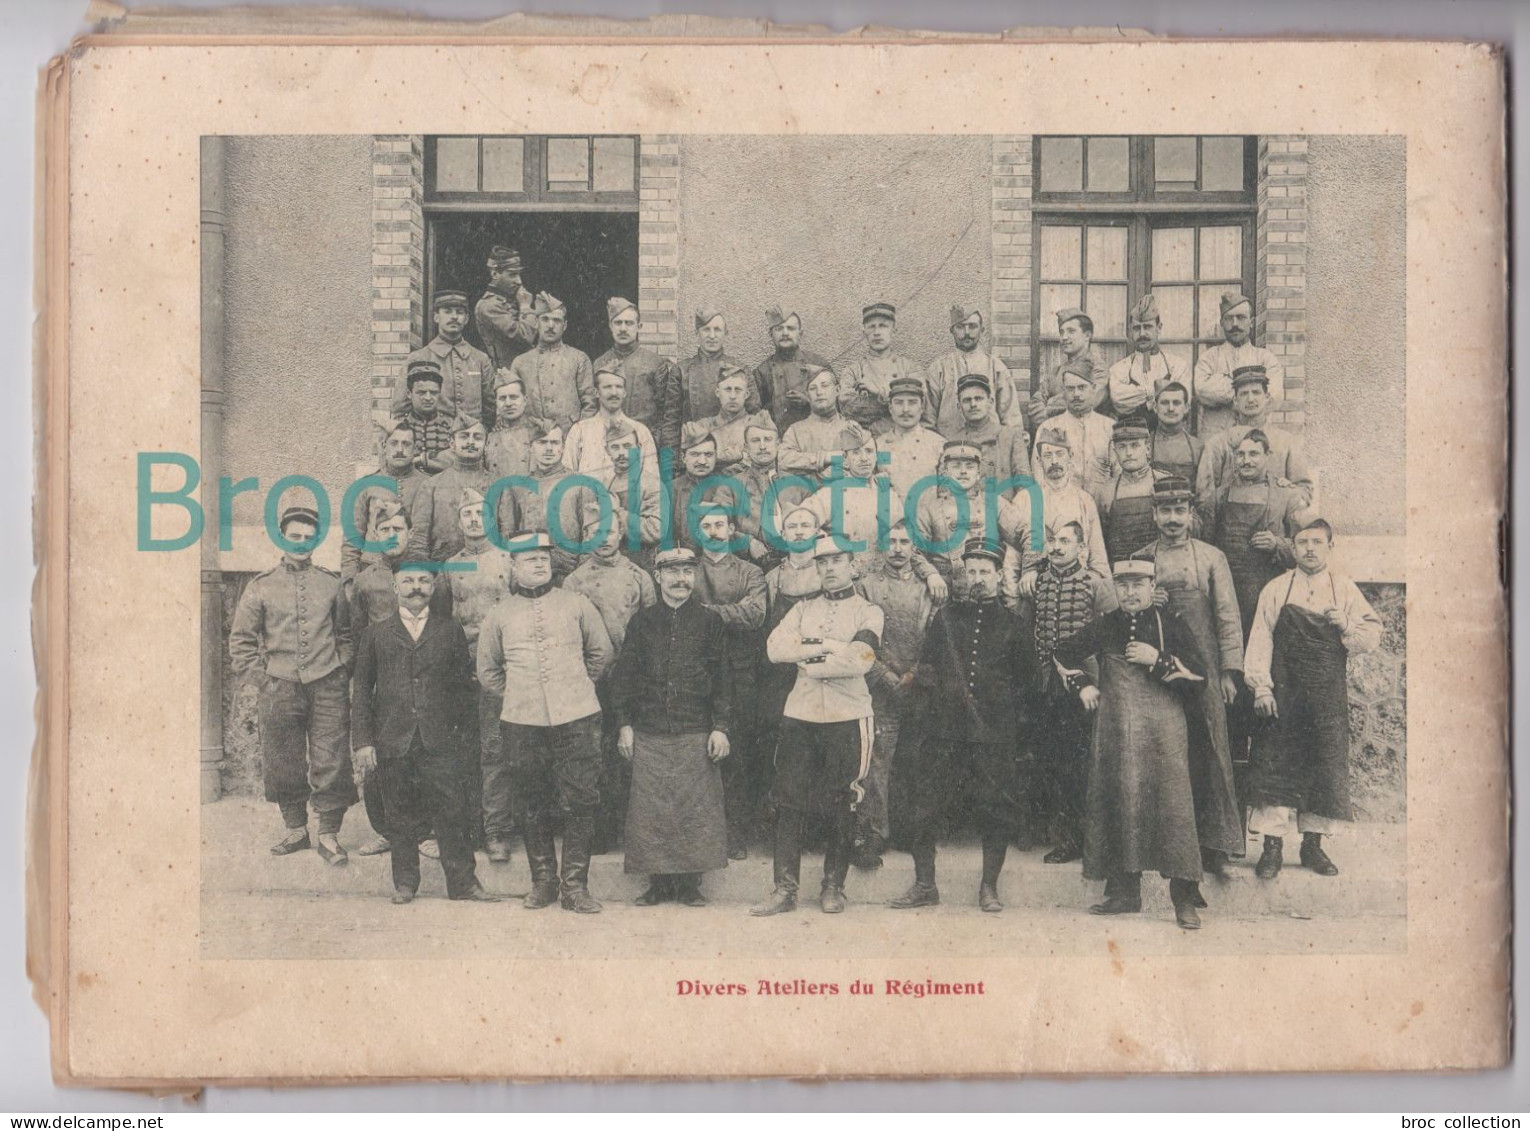 Châlons-sur-Marne, 5ème Régiment de Chasseurs, Mai 1908, album souvenir, 33 pages de photos